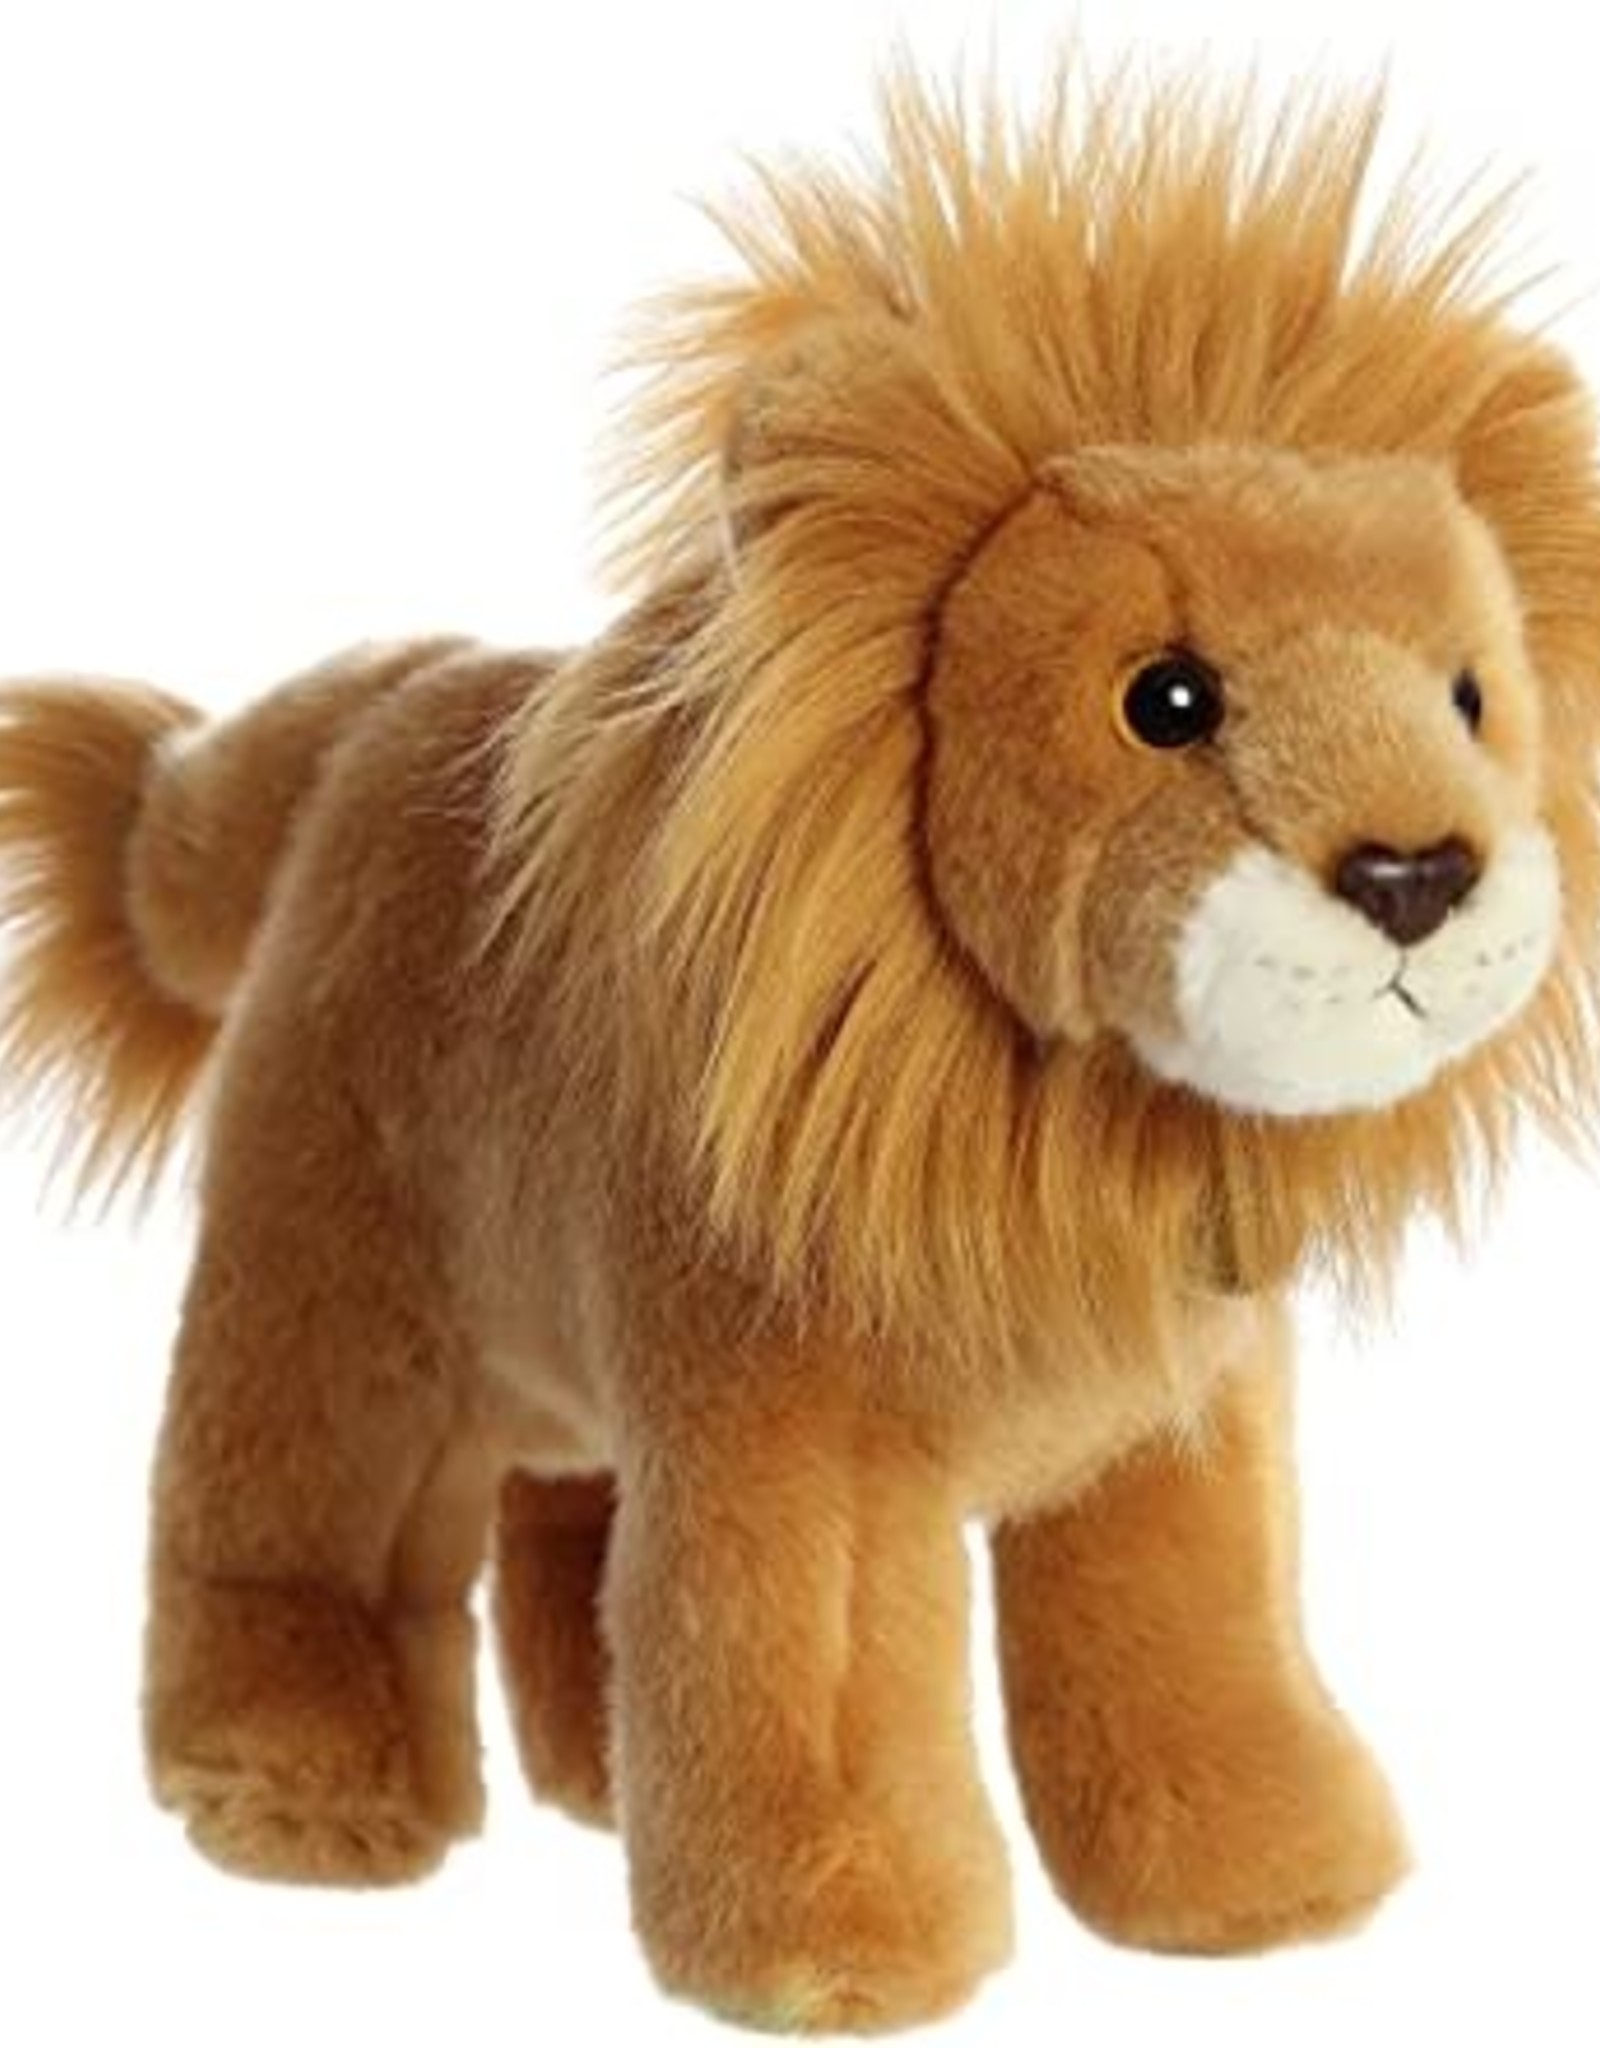 Aurora MIYONI WILDlife PLUSH Cuddly Soft Toy Teddy Kids Gift Brand New